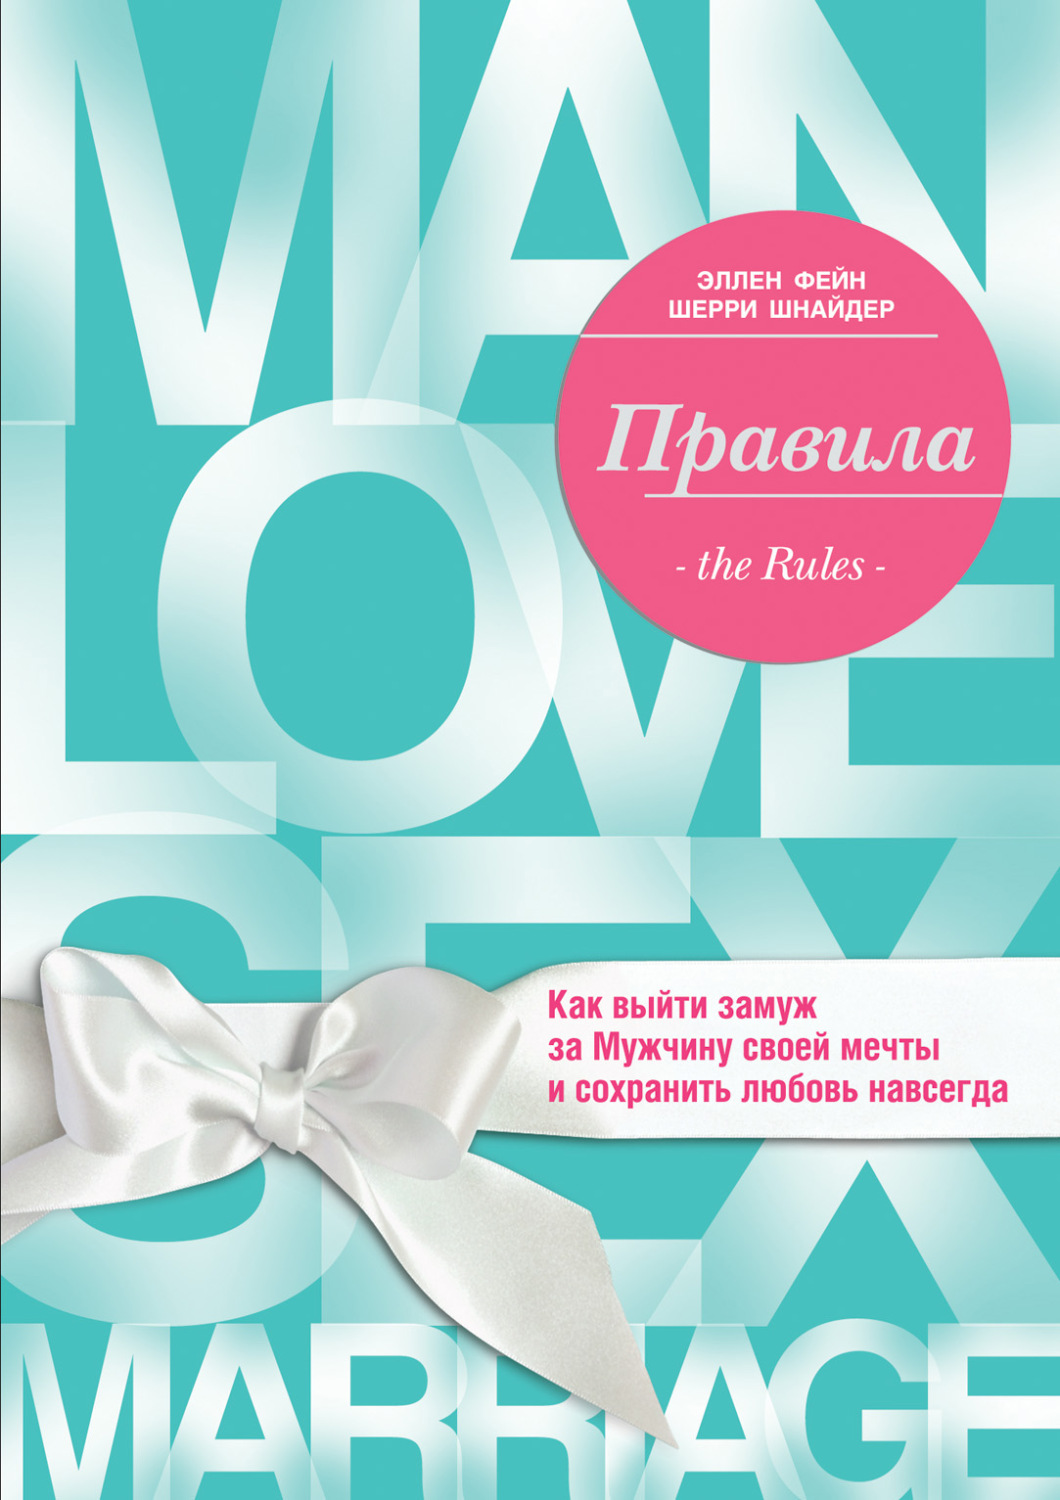 Читать онлайн «Золотые афоризмы о женщинах, любви и браке», Виктор Борисов – Литрес